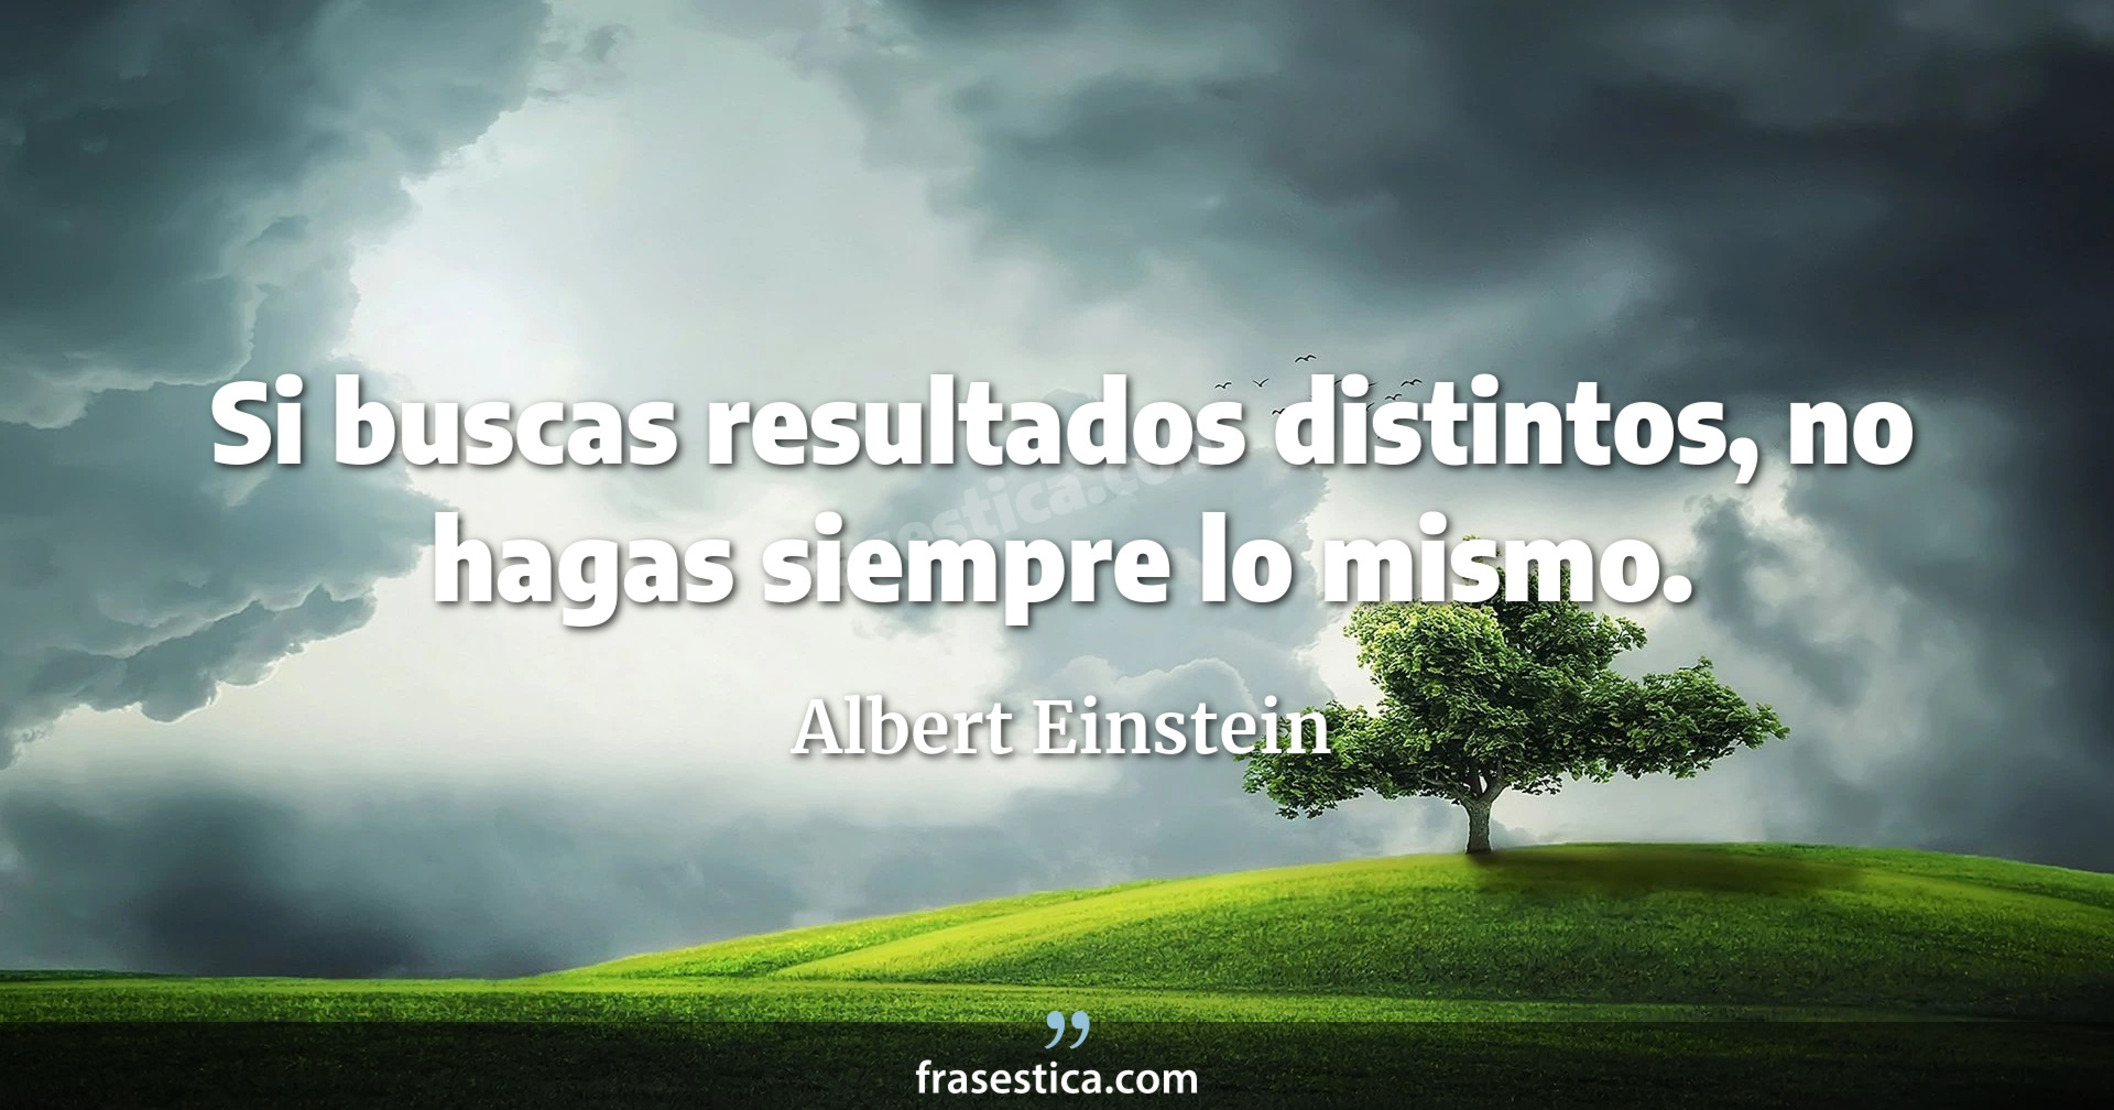 Si buscas resultados distintos, no hagas siempre lo mismo. - Albert Einstein